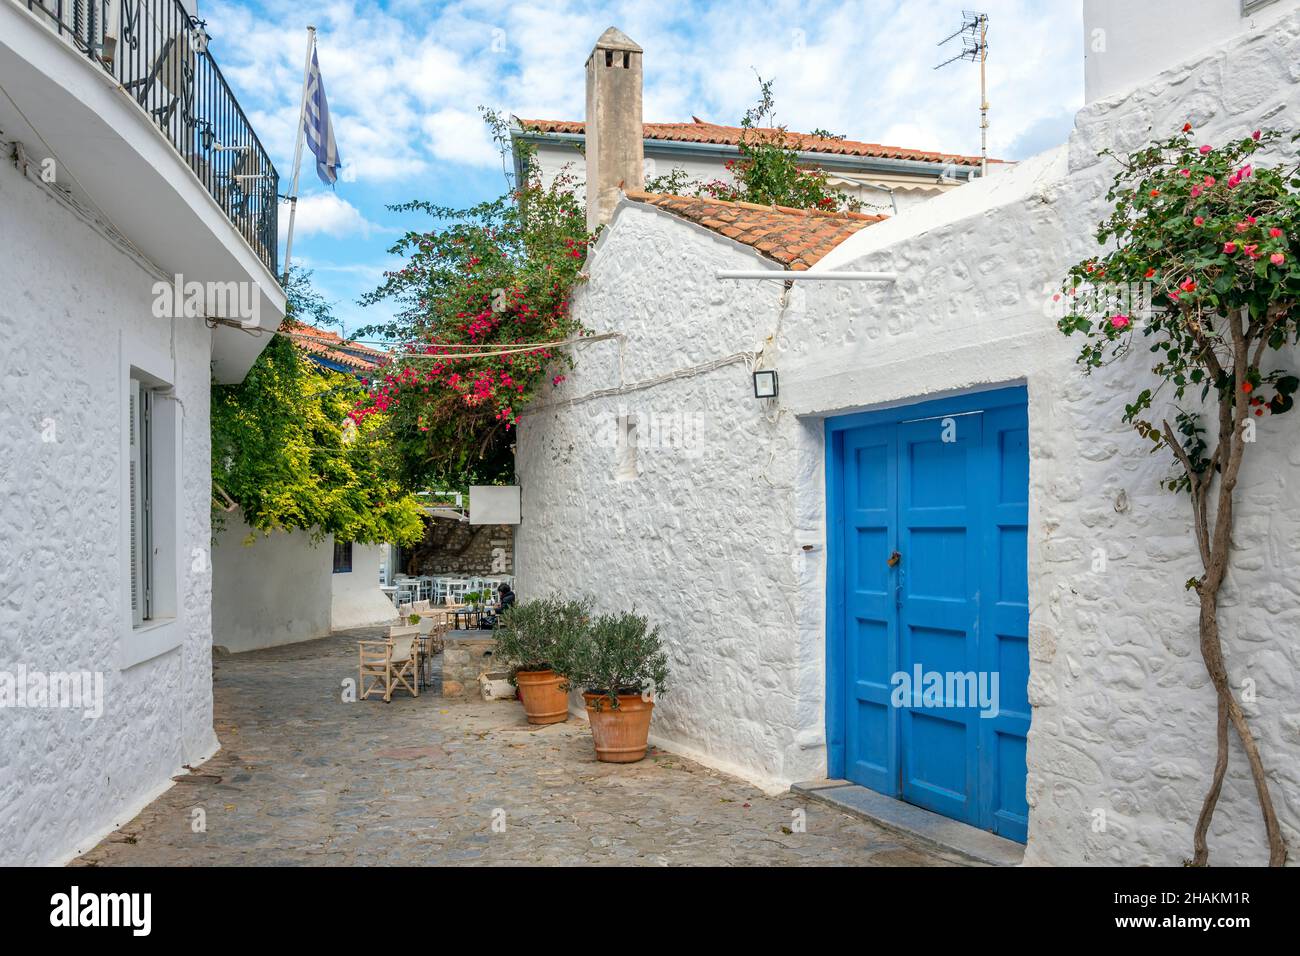 Une rue pittoresque de maisons blanchies à la chaux et un café-terrasse dans le village de la petite île grecque d'Hydra, en Grèce. Banque D'Images